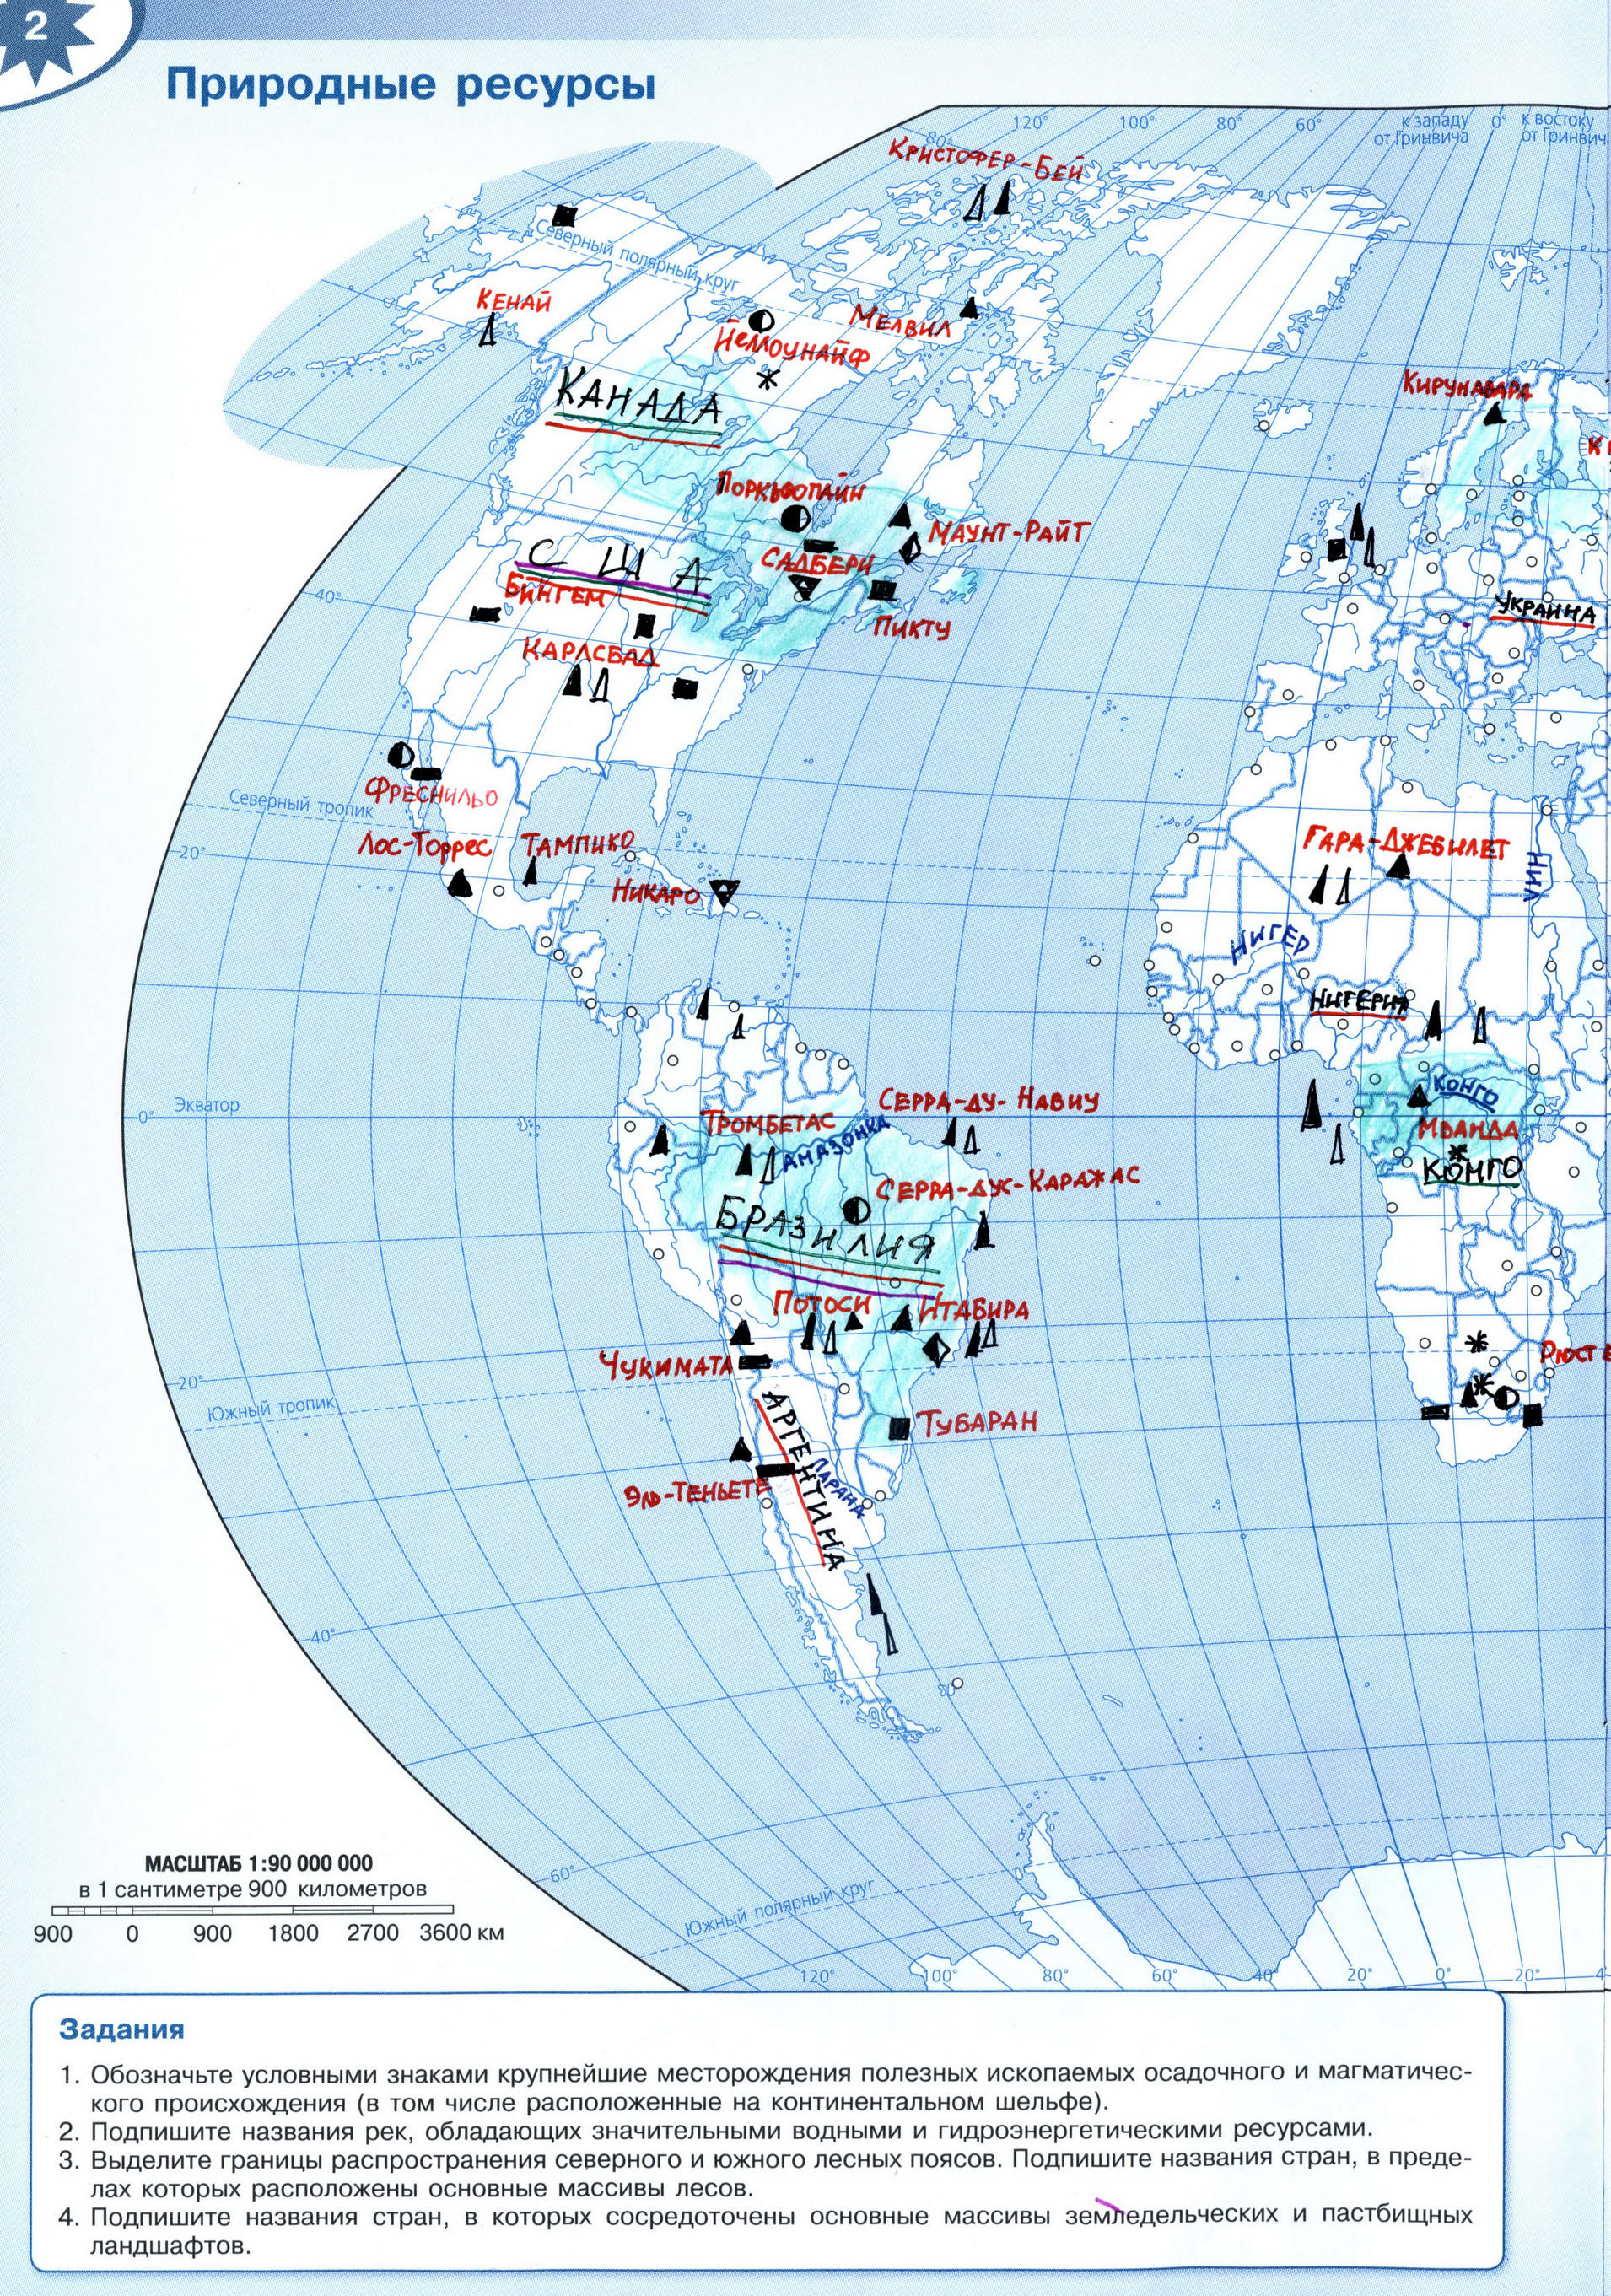 ГДЗ Природные ресурсы мира контурная карта 10-11